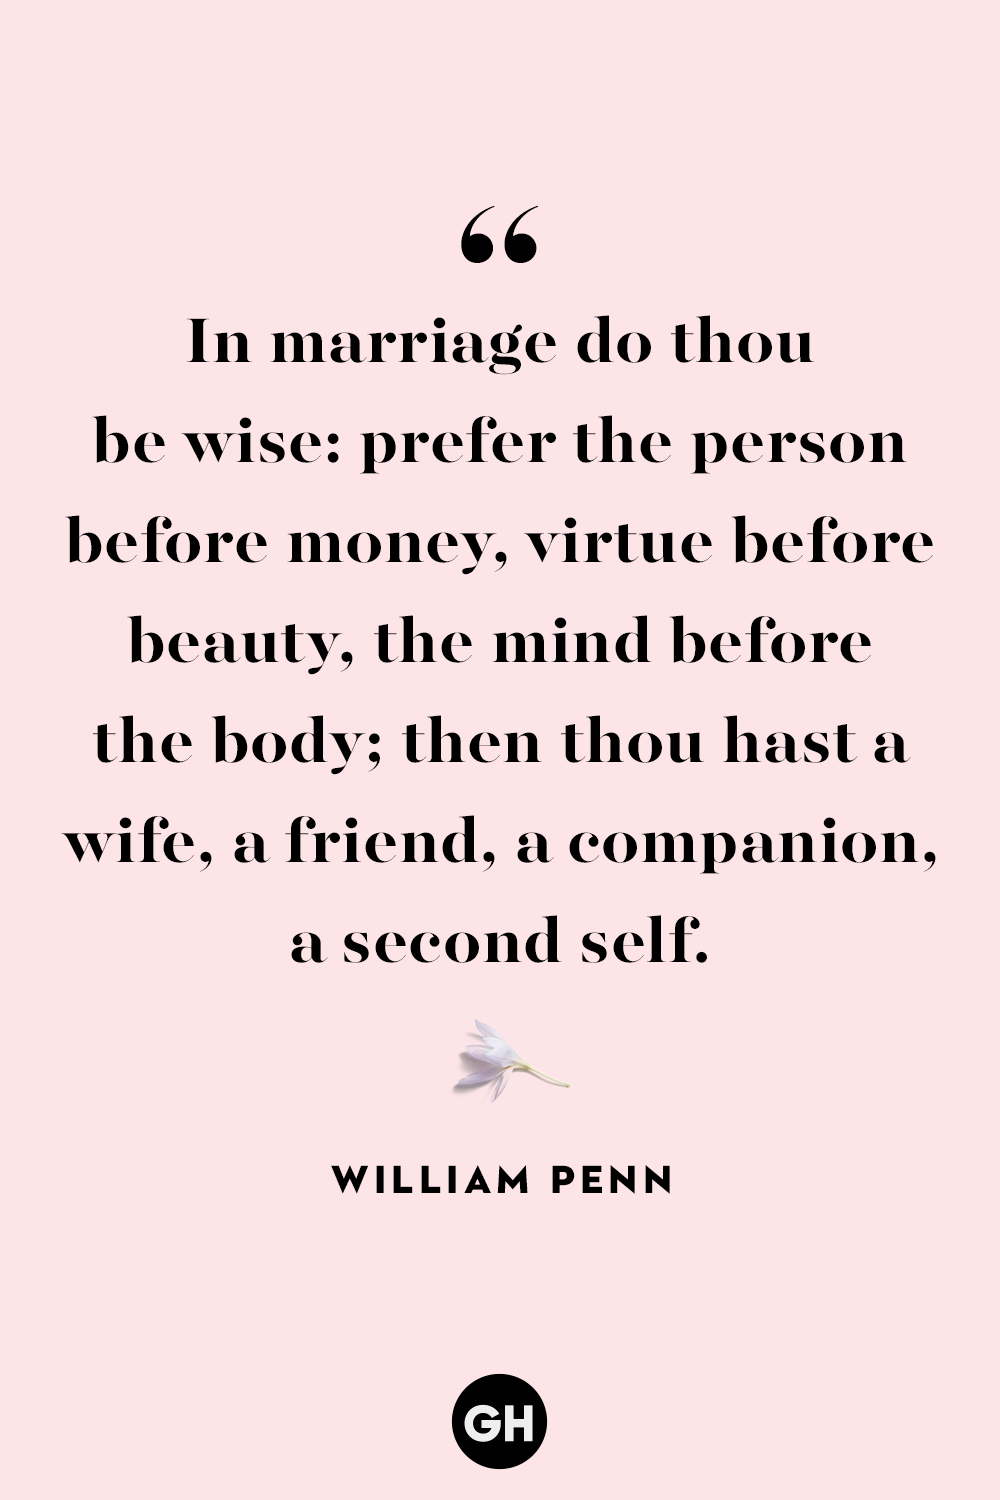 marriage quotes william penn 1565979064